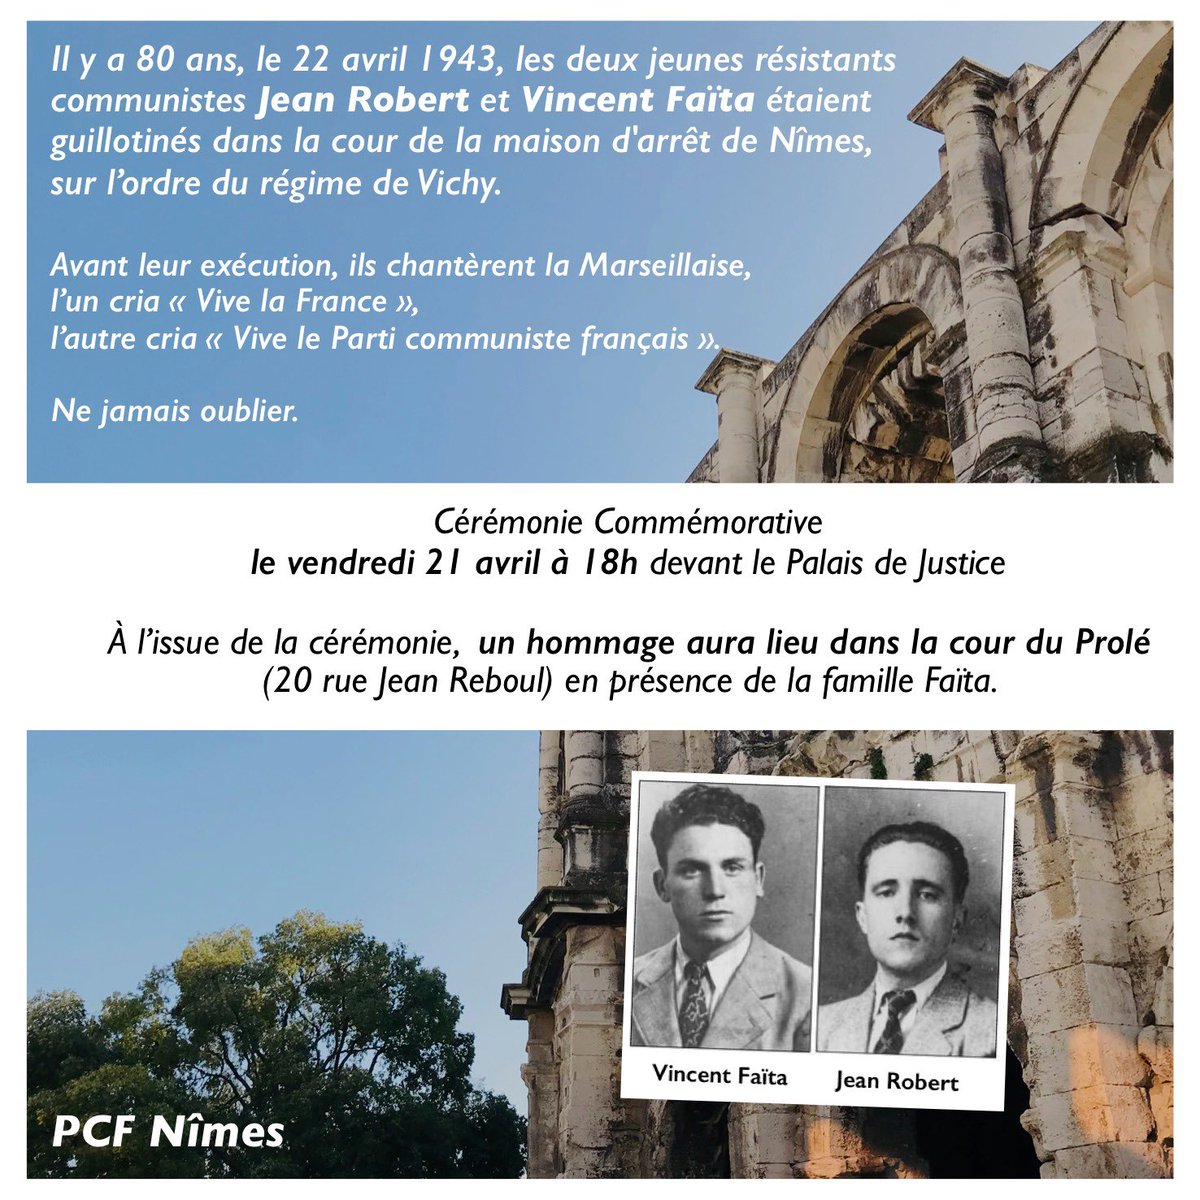 Le 22avril 1943, les jeunes résistants communistes Jean Robert et Vincent Faïta étaient guillotinés à Nîmes. Avant de mourir, l’un cria «Vive la France», l’autre cria «Vive le Parti communiste Français».

Hommage vendredi prochain à Nîmes, 80ans après leur exécution.